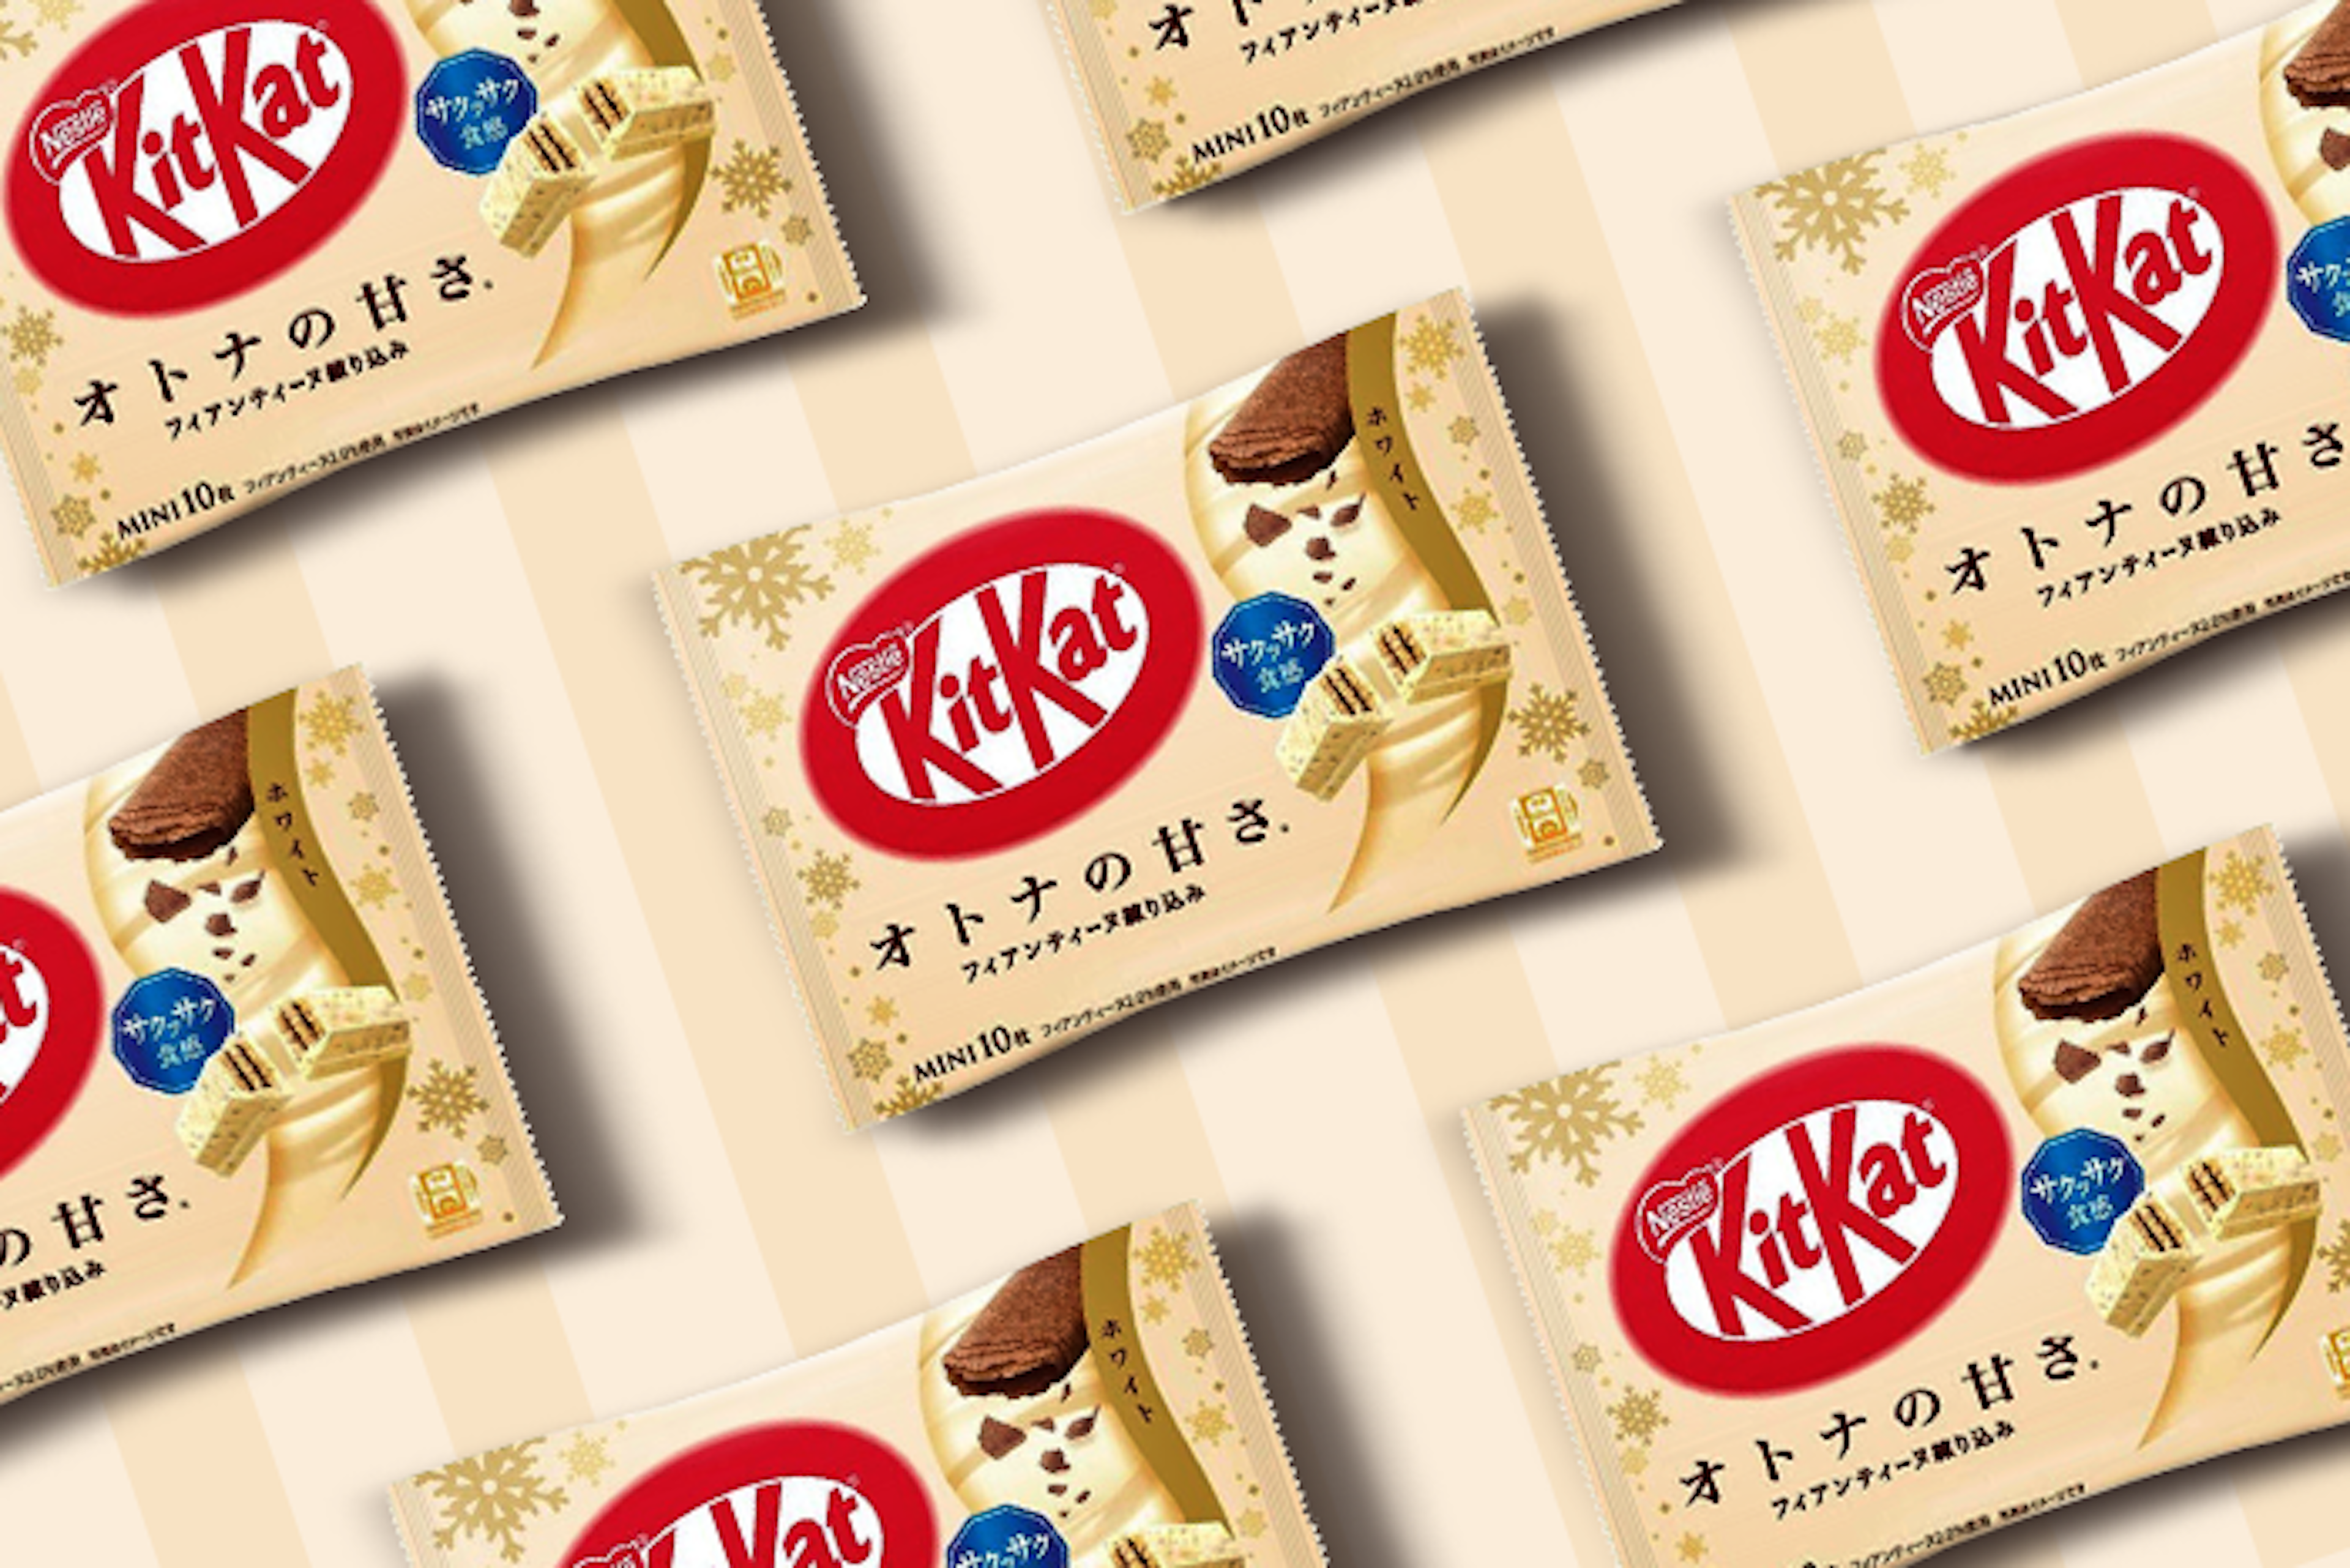 Nahaufnahme-eines-Kitkat-Mini-Weiße-Schokolade-Stücks-zeigt-die-cremige-weiße-Schokoladenüberzug-und-die-knusprige-Innenschicht